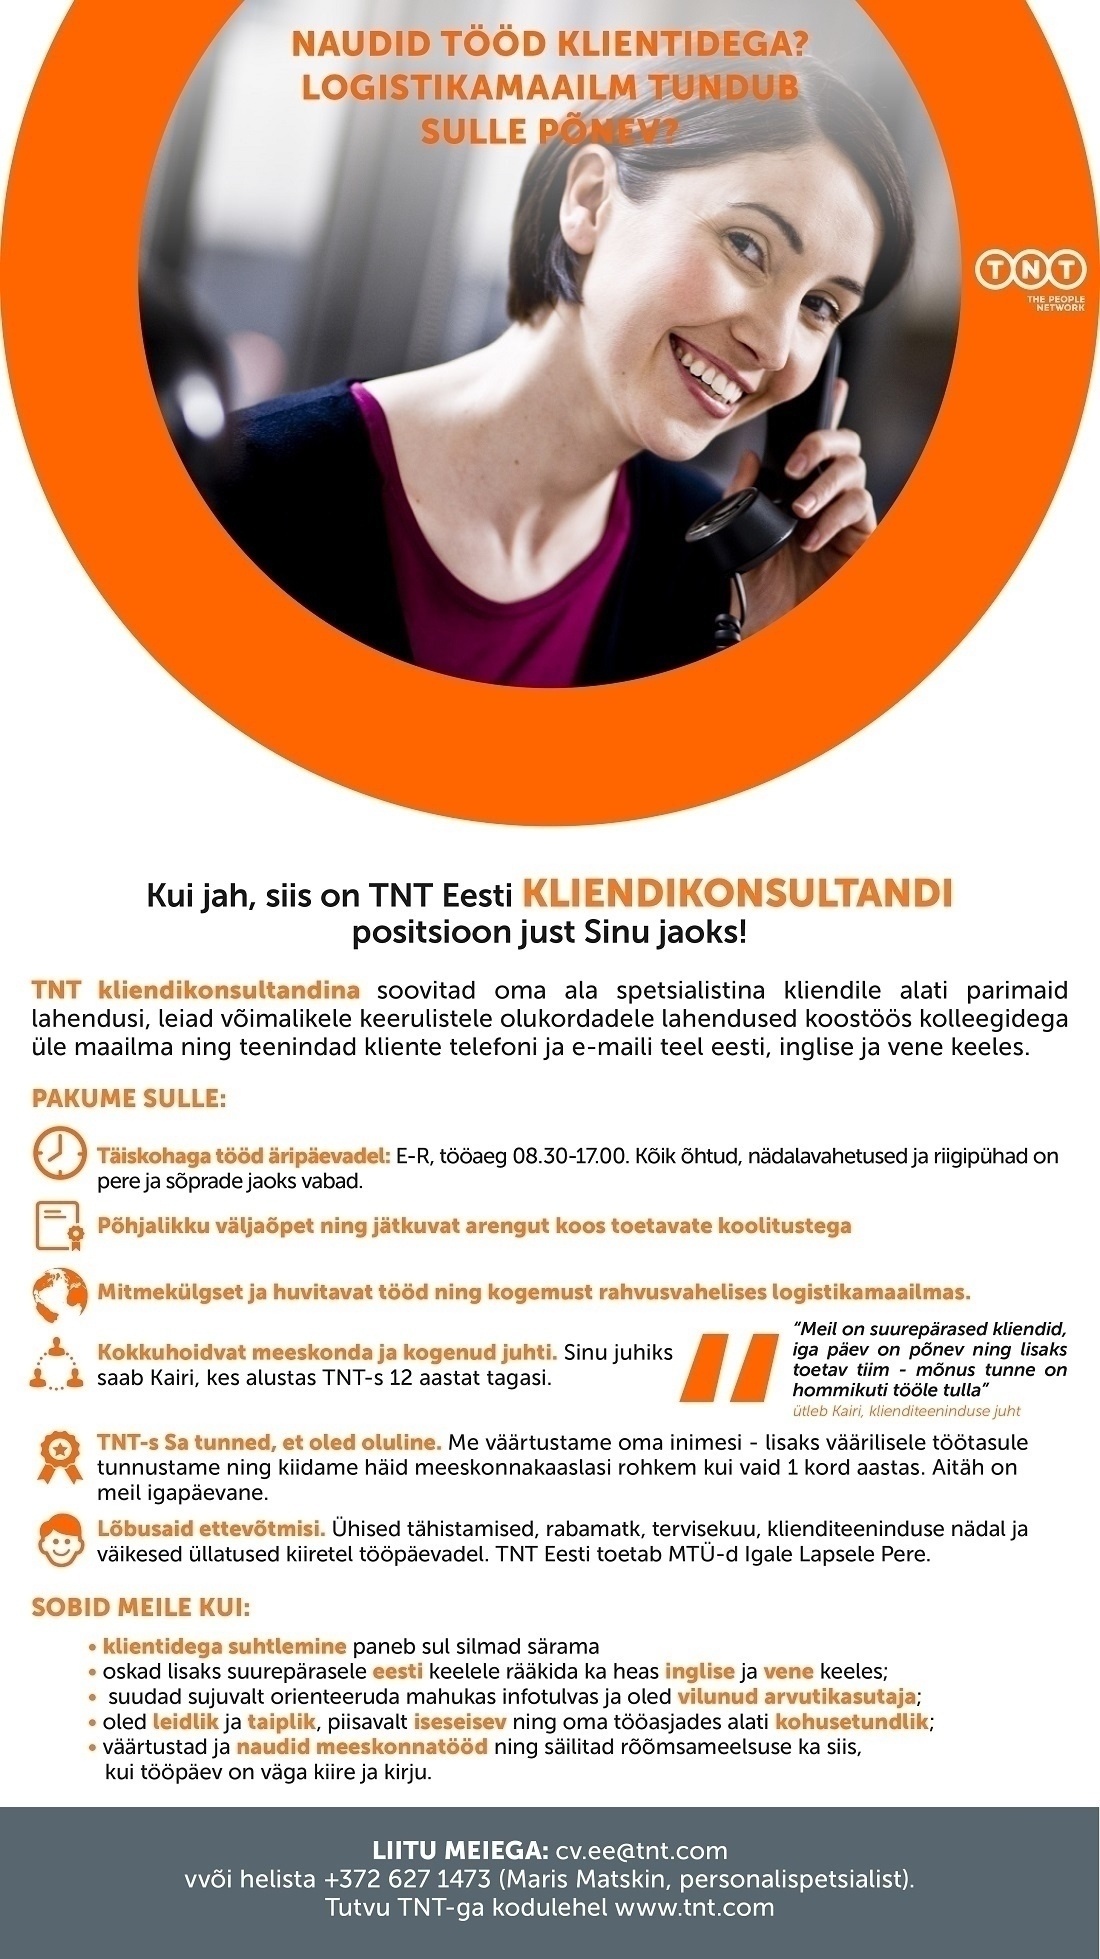 TNT EXPRESS WORLDWIDE EESTI AS Kliendikonsultant